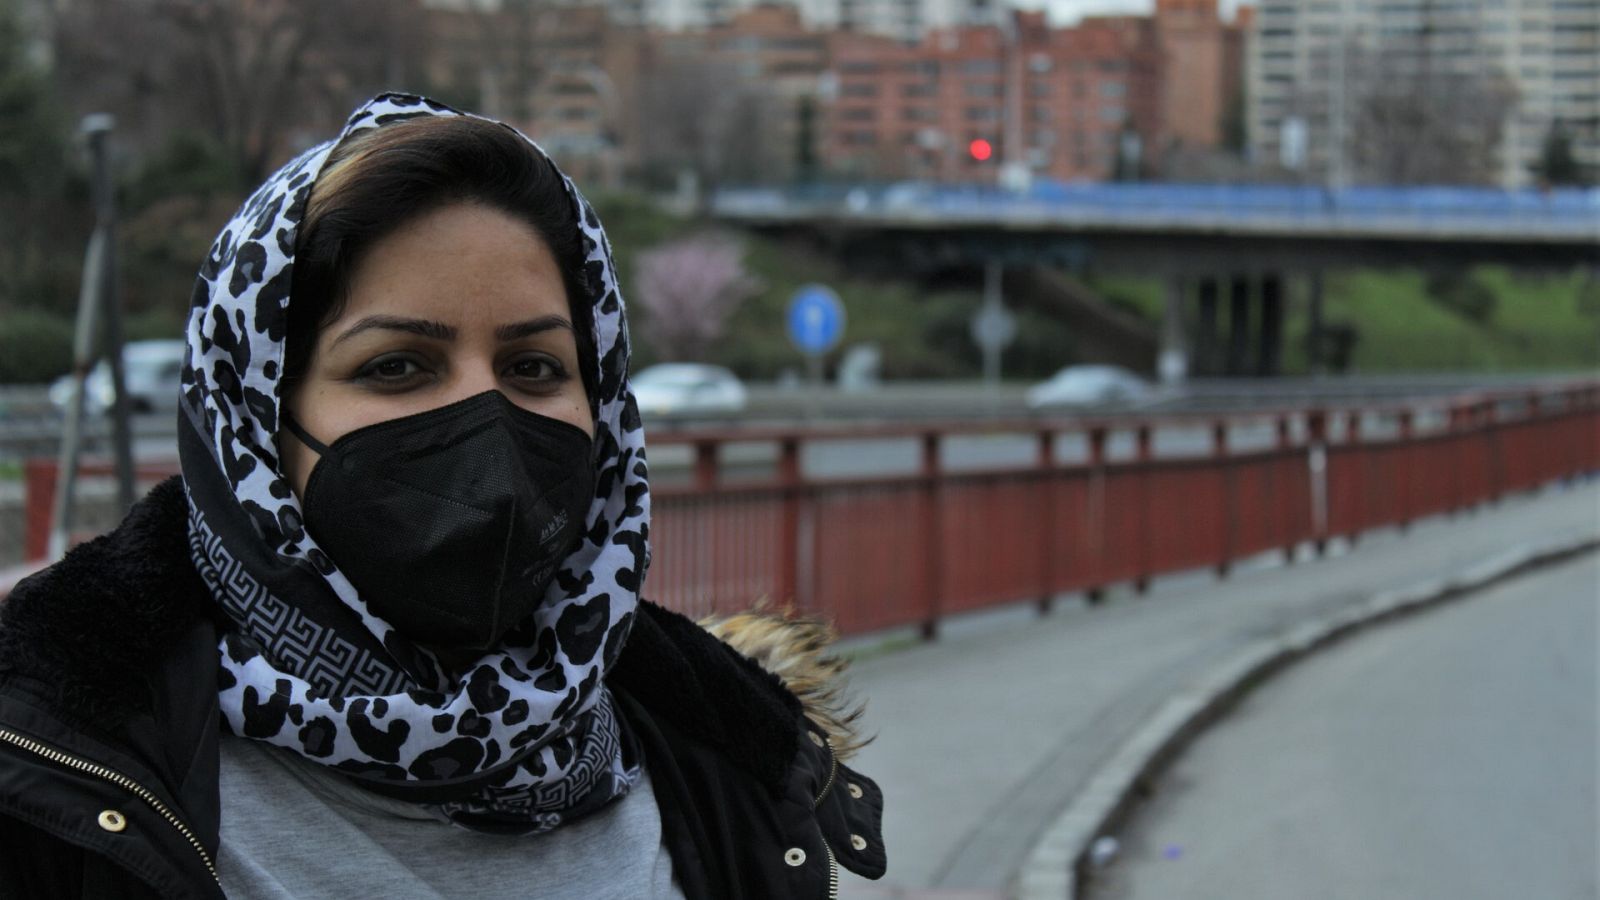  Por tres razones - Sharifeh Ayubi: "Te ven en los ojos que eres extranjera" - Escuchar ahora